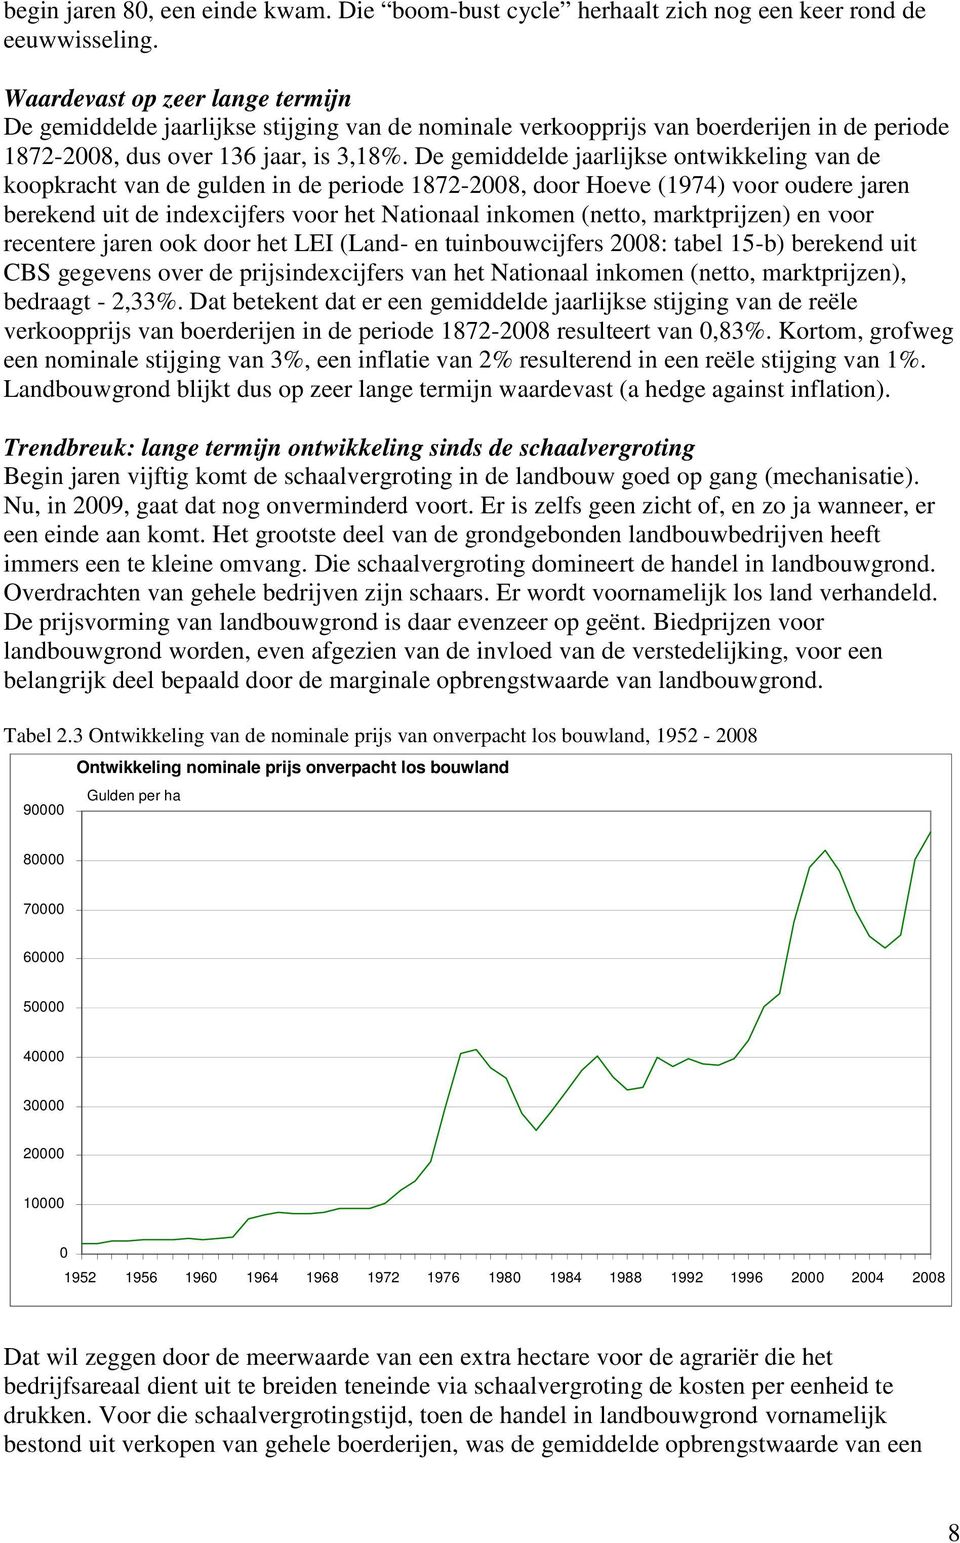 De gemiddelde jaarlijkse ontwikkeling van de koopkracht van de gulden in de periode 1872-2008, door Hoeve (1974) voor oudere jaren berekend uit de indexcijfers voor het Nationaal inkomen (netto,